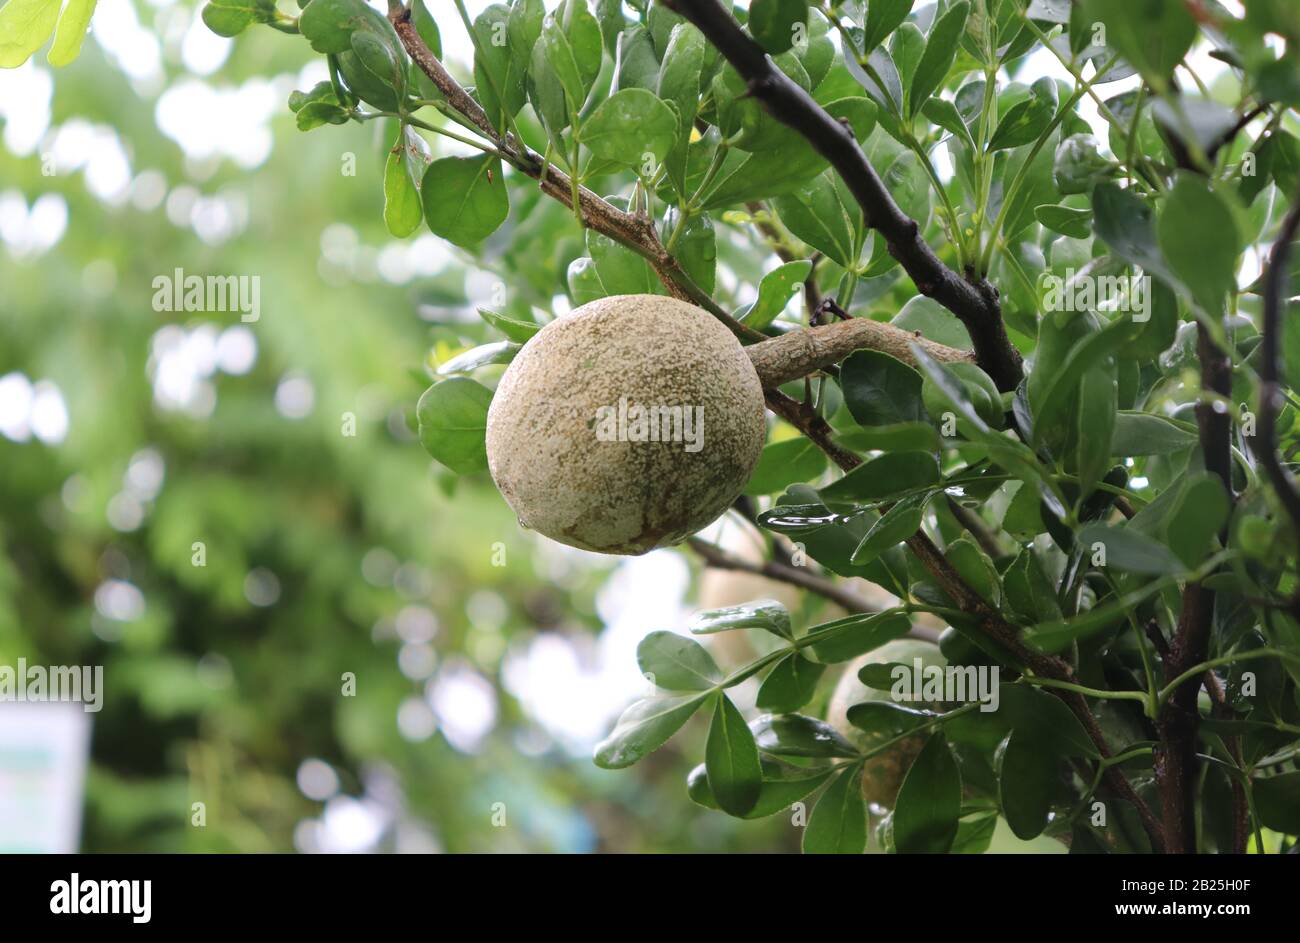 Limonia acidissima on the tree. Wood apple, Curd Fruit Stock Photo